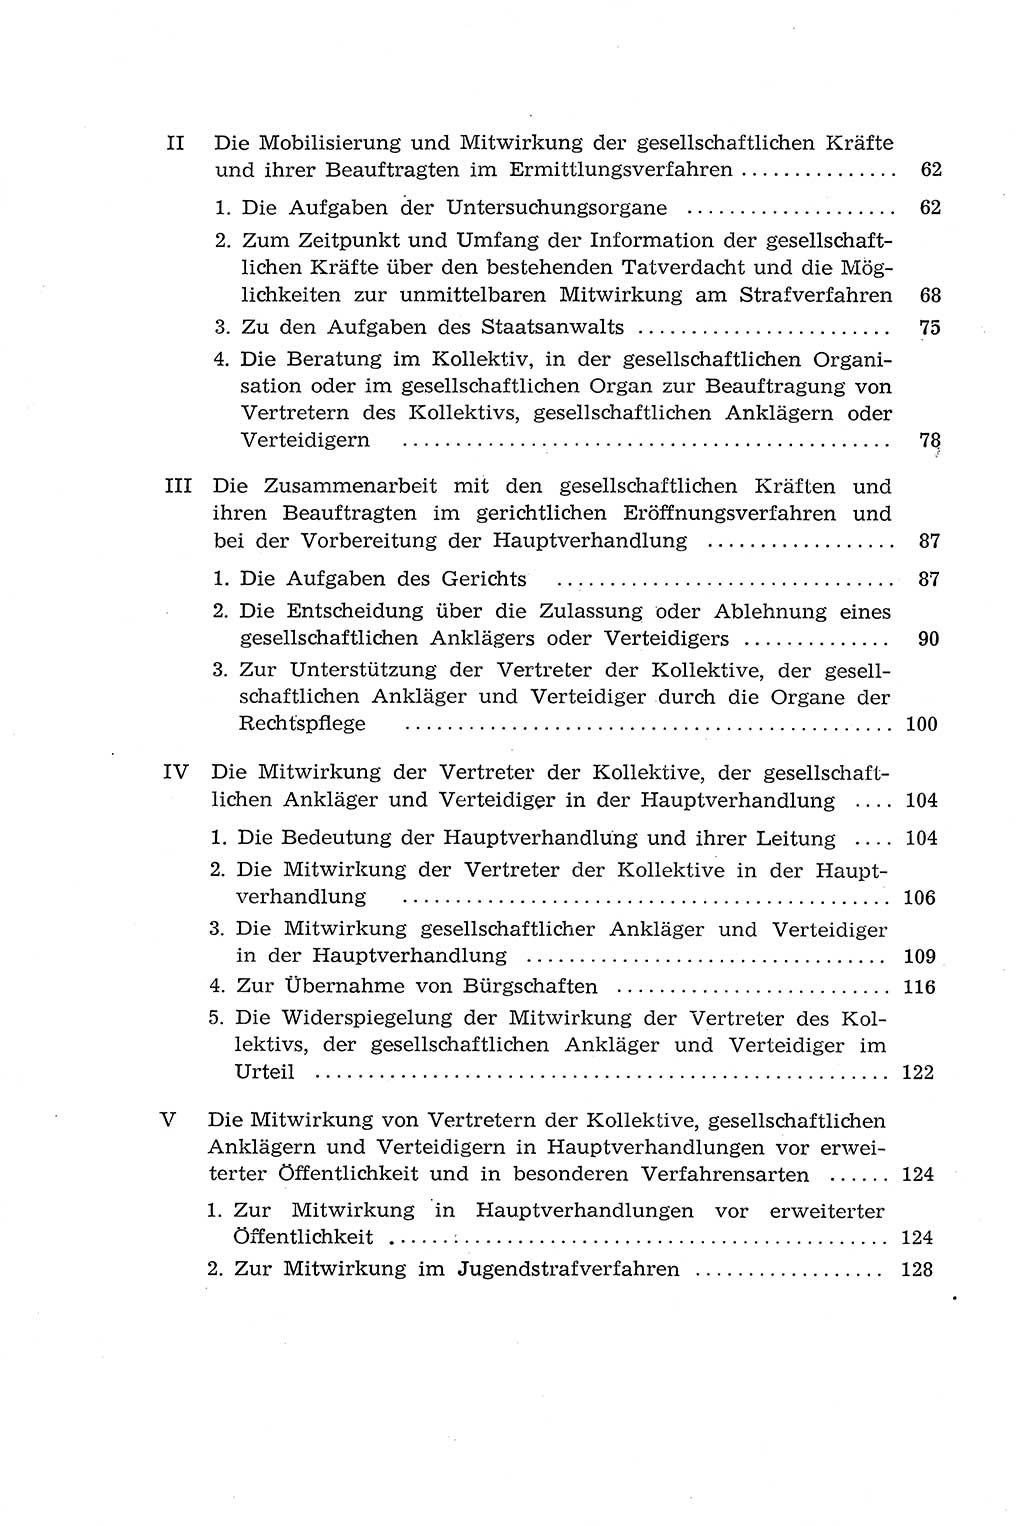 Die Mitwirkung der Werktätigen am Strafverfahren [Deutsche Demokratische Republik (DDR)] 1966, Seite 6 (Mitw. Str.-Verf. DDR 1966, S. 6)